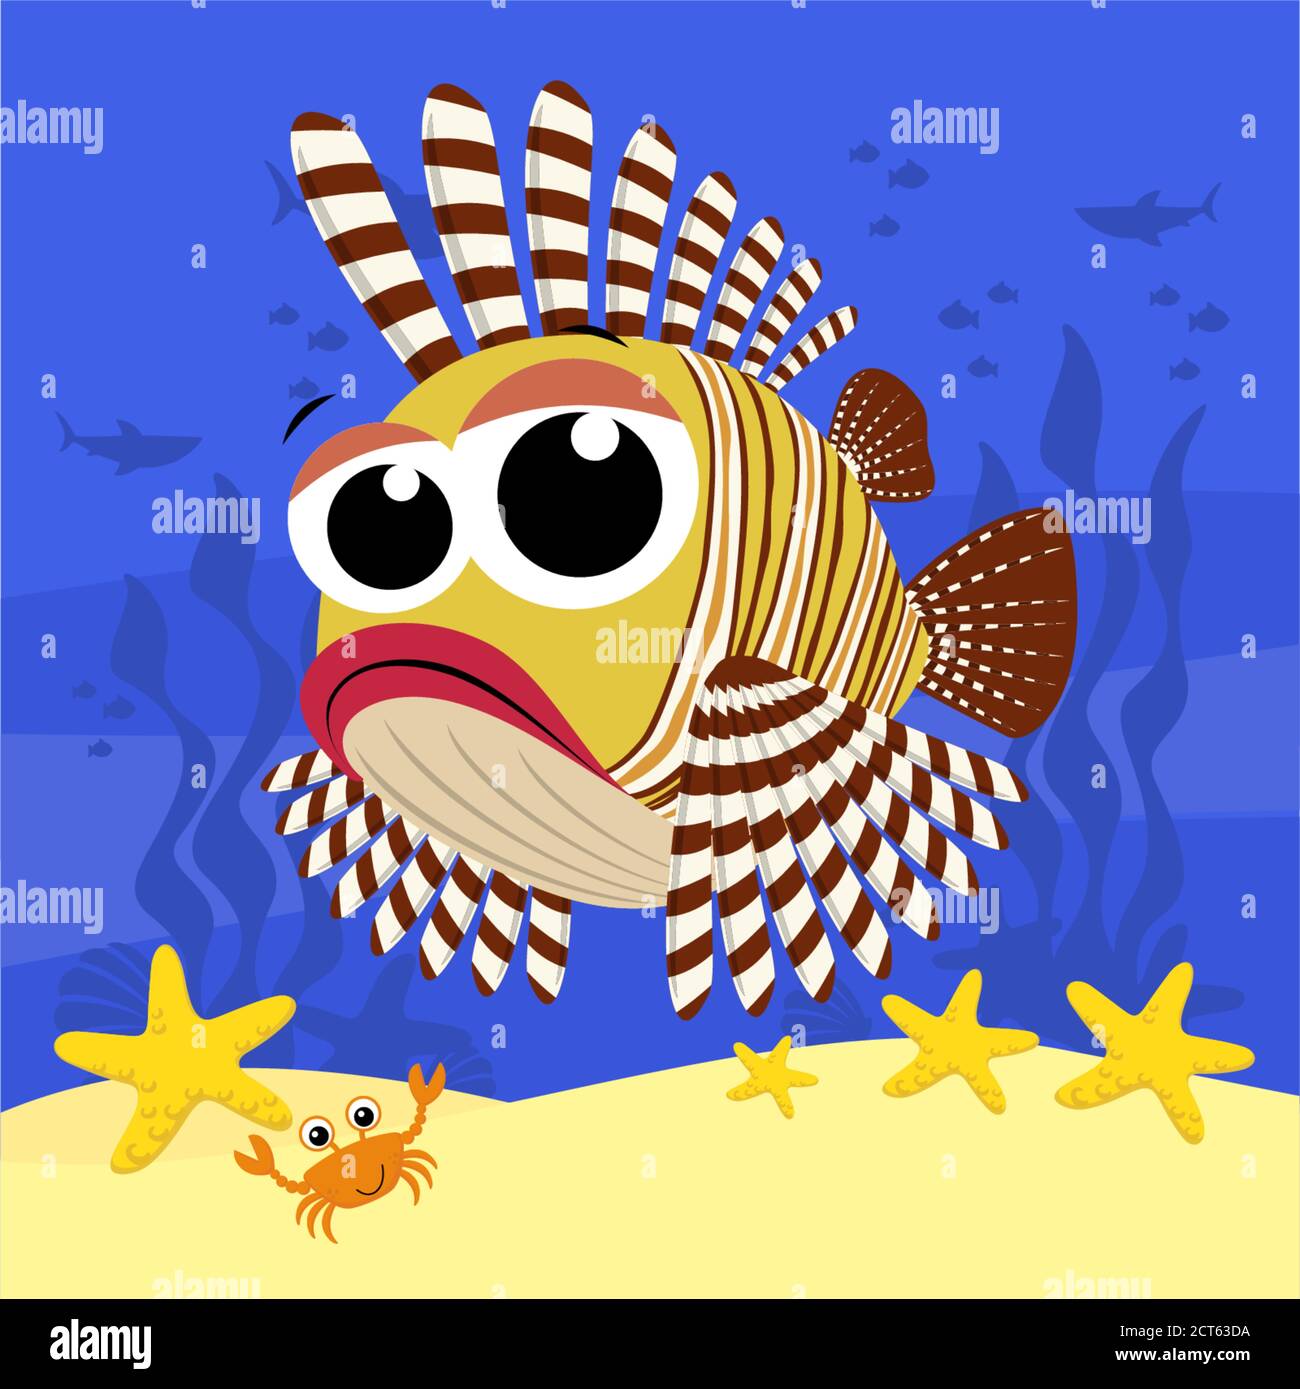 Cute Baby Löwenfisch Cartoon Illustration, auch bekannt als pterois mombasae, Glühwürmchen oder Frispenkeyfish. Mit Blasen und unter dem Meeresgrund. D Stock Vektor